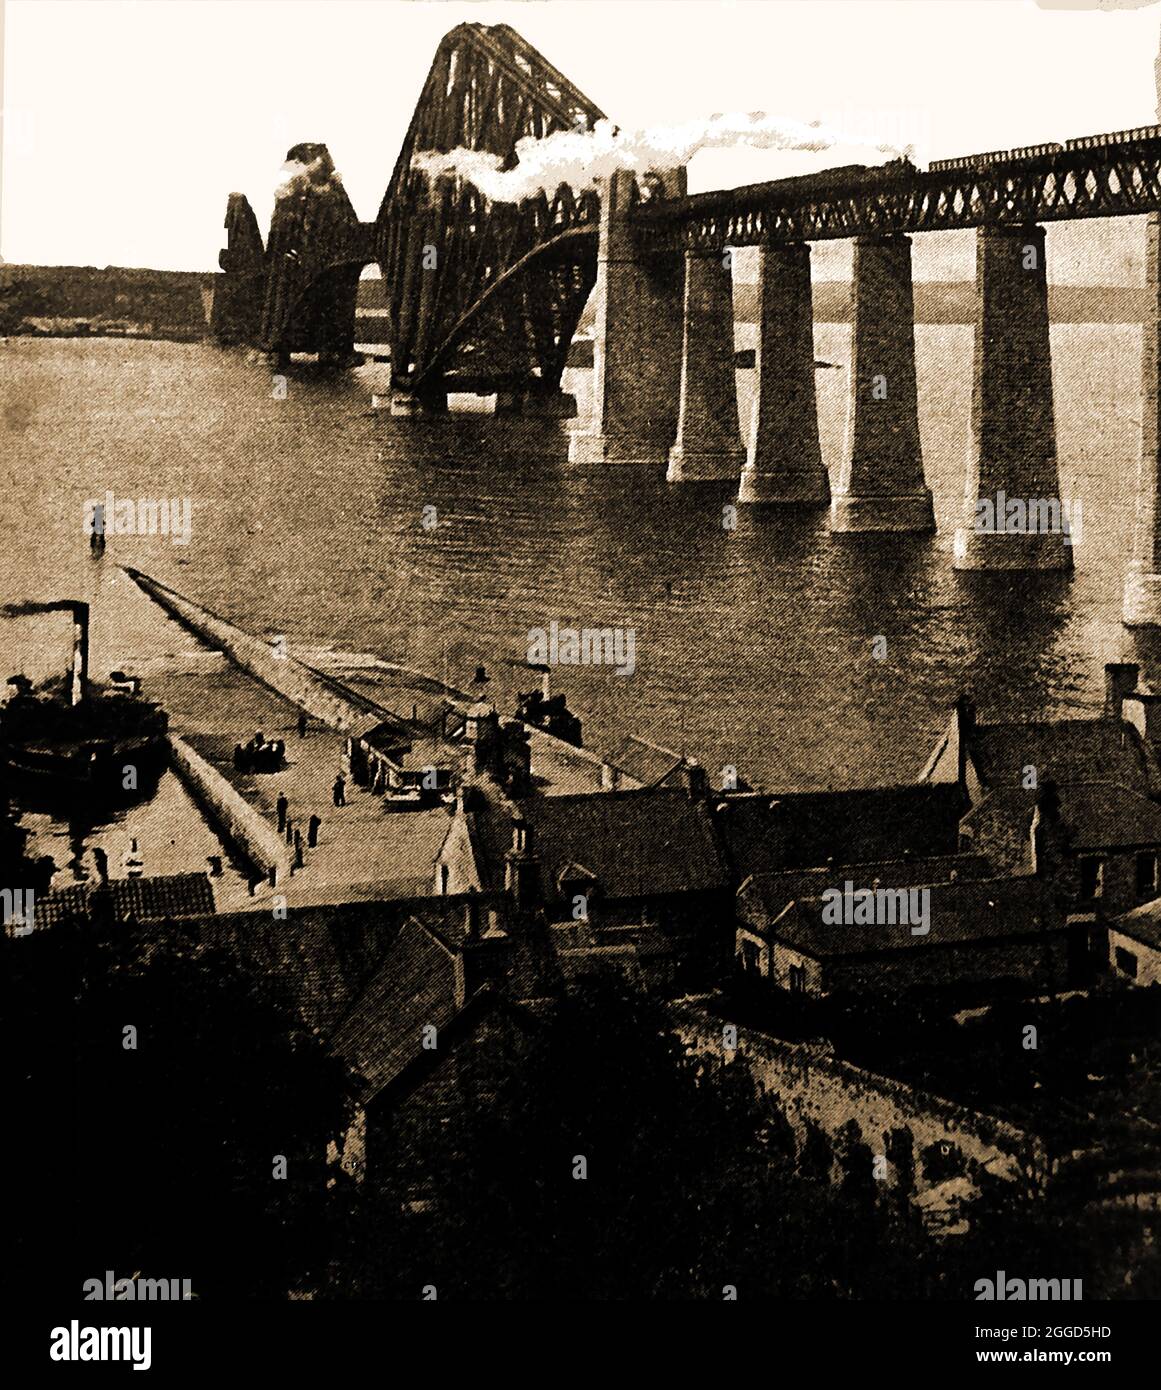 1914 Fotografía del puente del tren de Forth con un cruce de tren de vapor hacia la terminal de ferry South Queensferry . Se llama así por Santa Margarita de Escocia, que se cree que ha establecido un ferry en este punto para los peregrinos. Murió en 1093 y su cuerpo fue llevado en ferry a la Abadía de Dunfermline. El puente voladizo fue construido a través del Firth of Forth y fue completado en 1890, en ese momento siendo el puente voladizo más largo del mundo Foto de stock